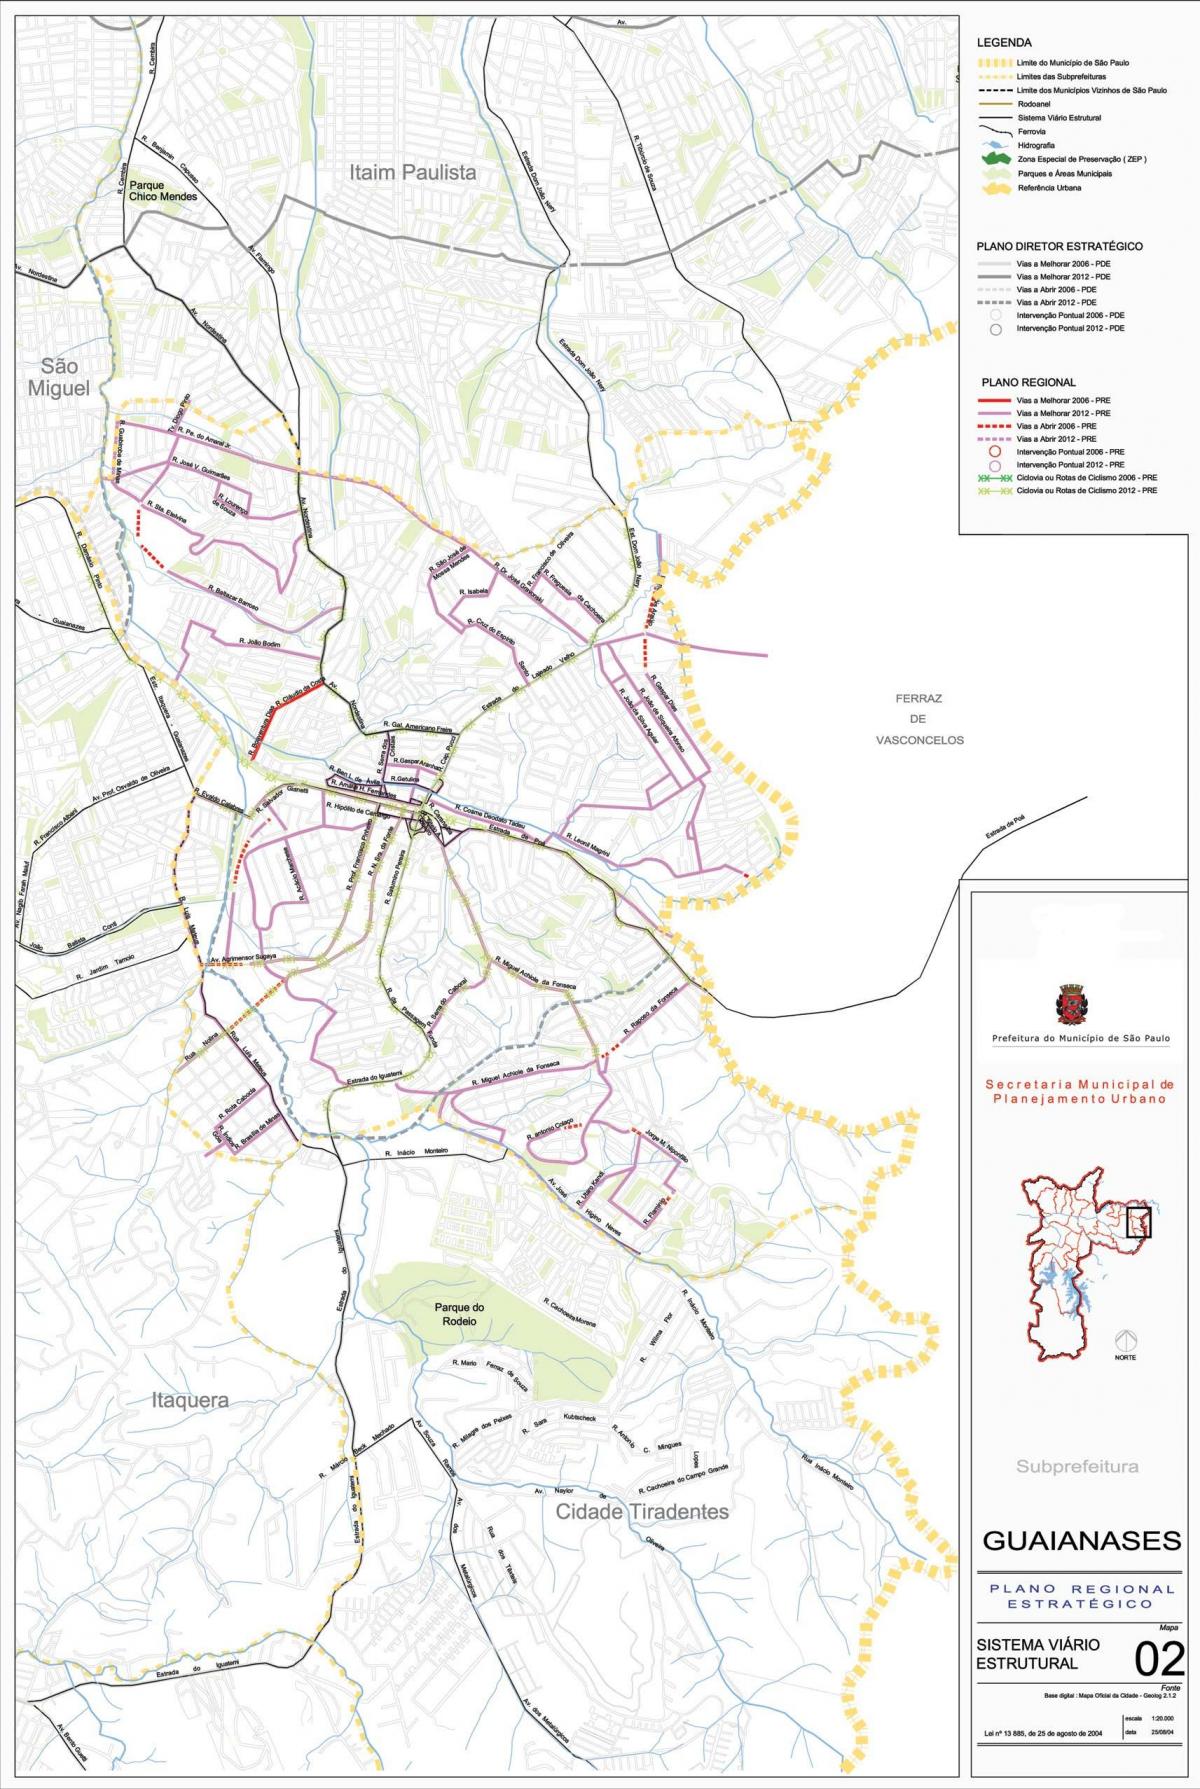 Kaart van Guaianases São Paulo - Wegen